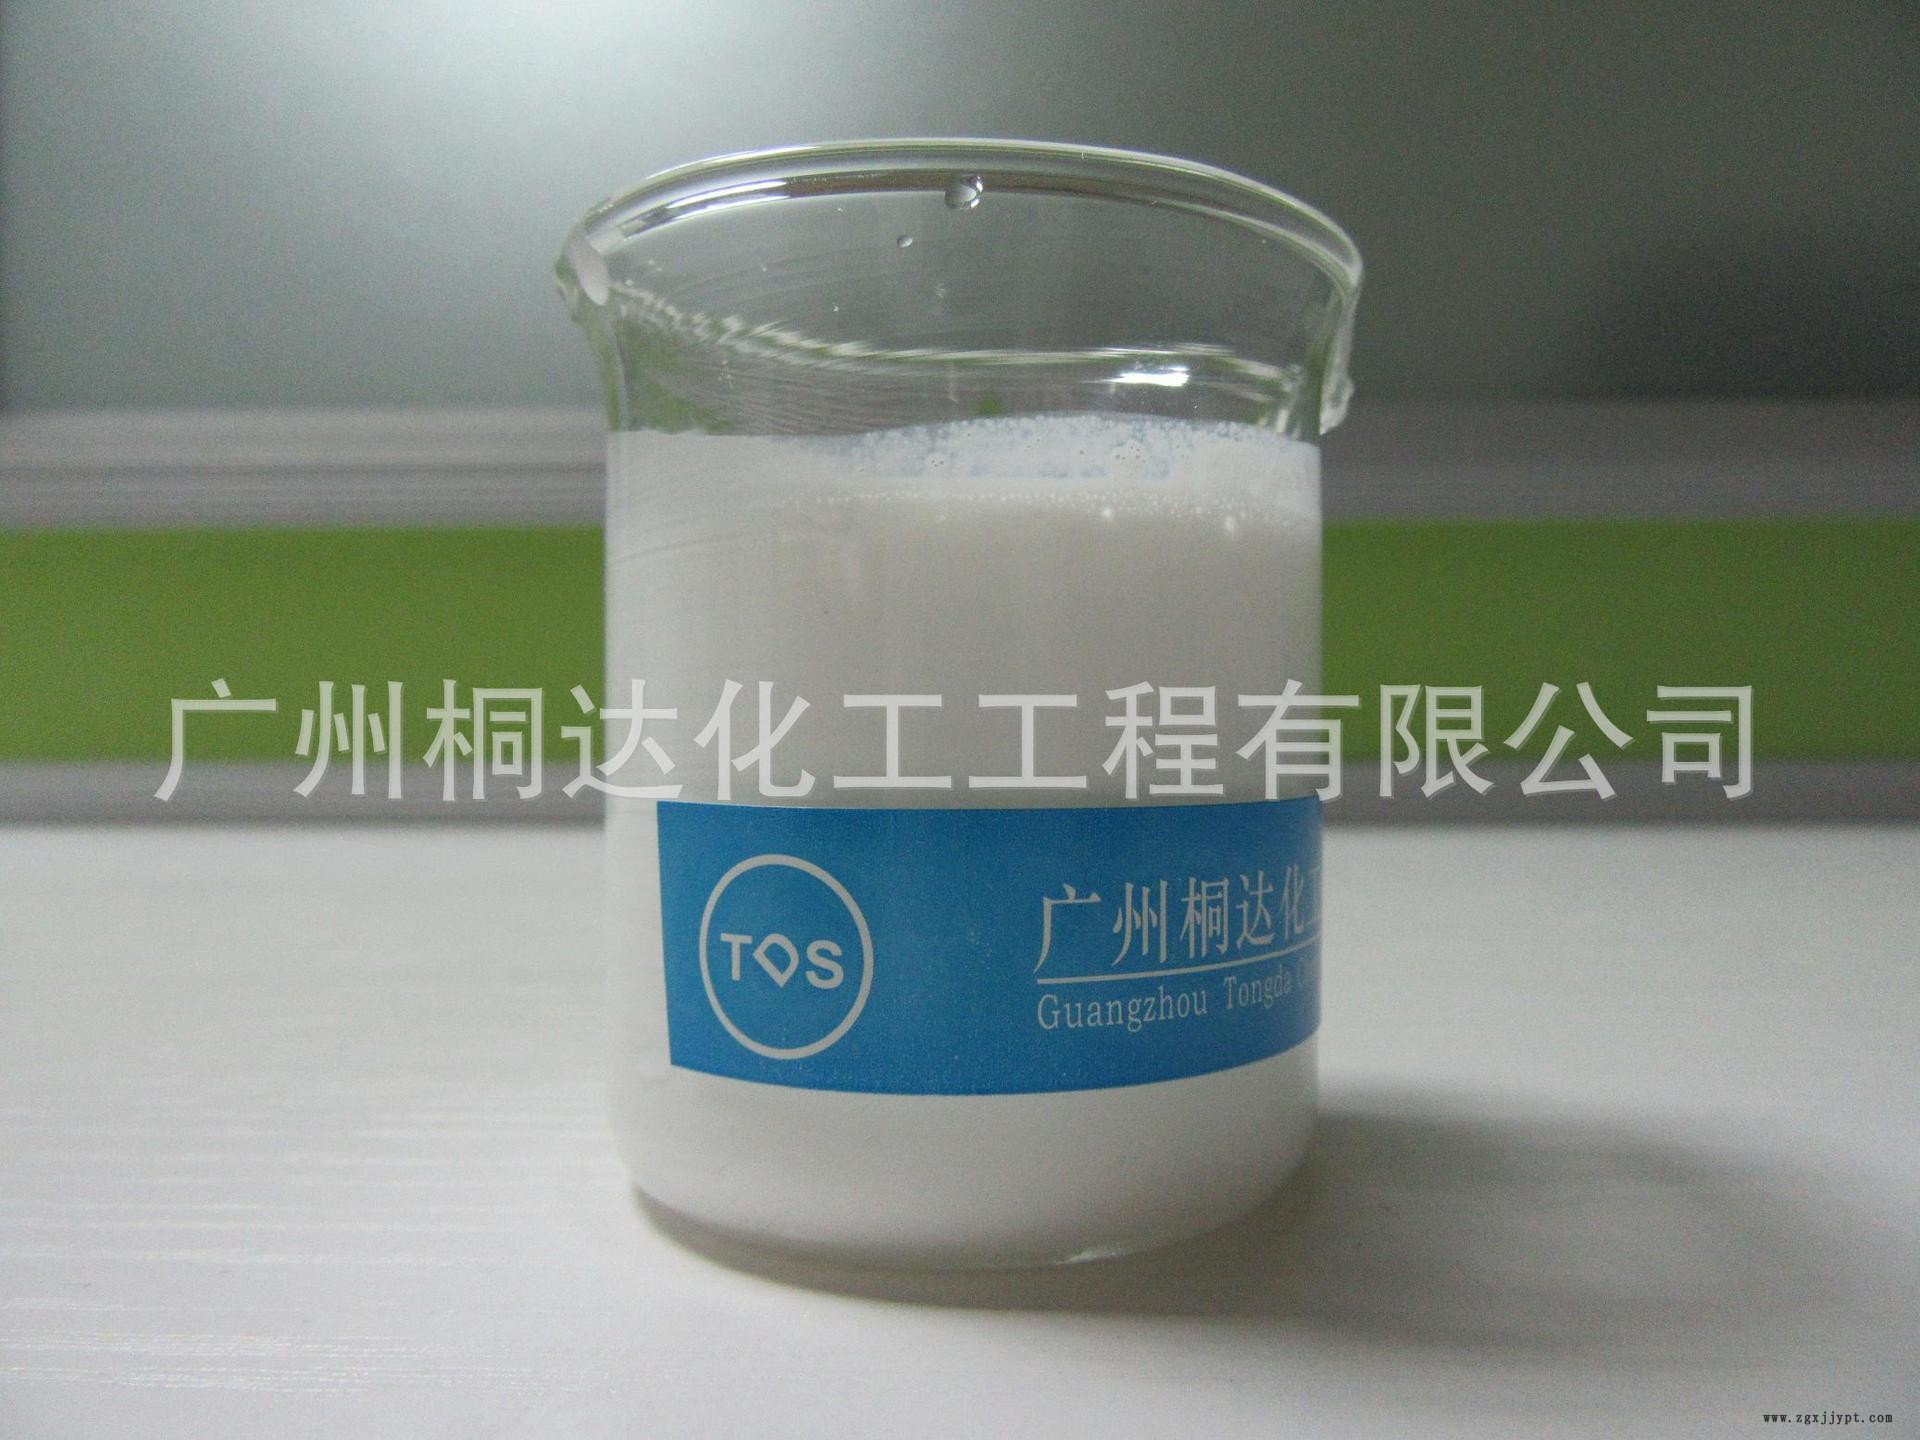 RRJ-211 柔软剂、织物超蓬松柔软剂 适用于纯棉、涤纶、涤棉等示例图1